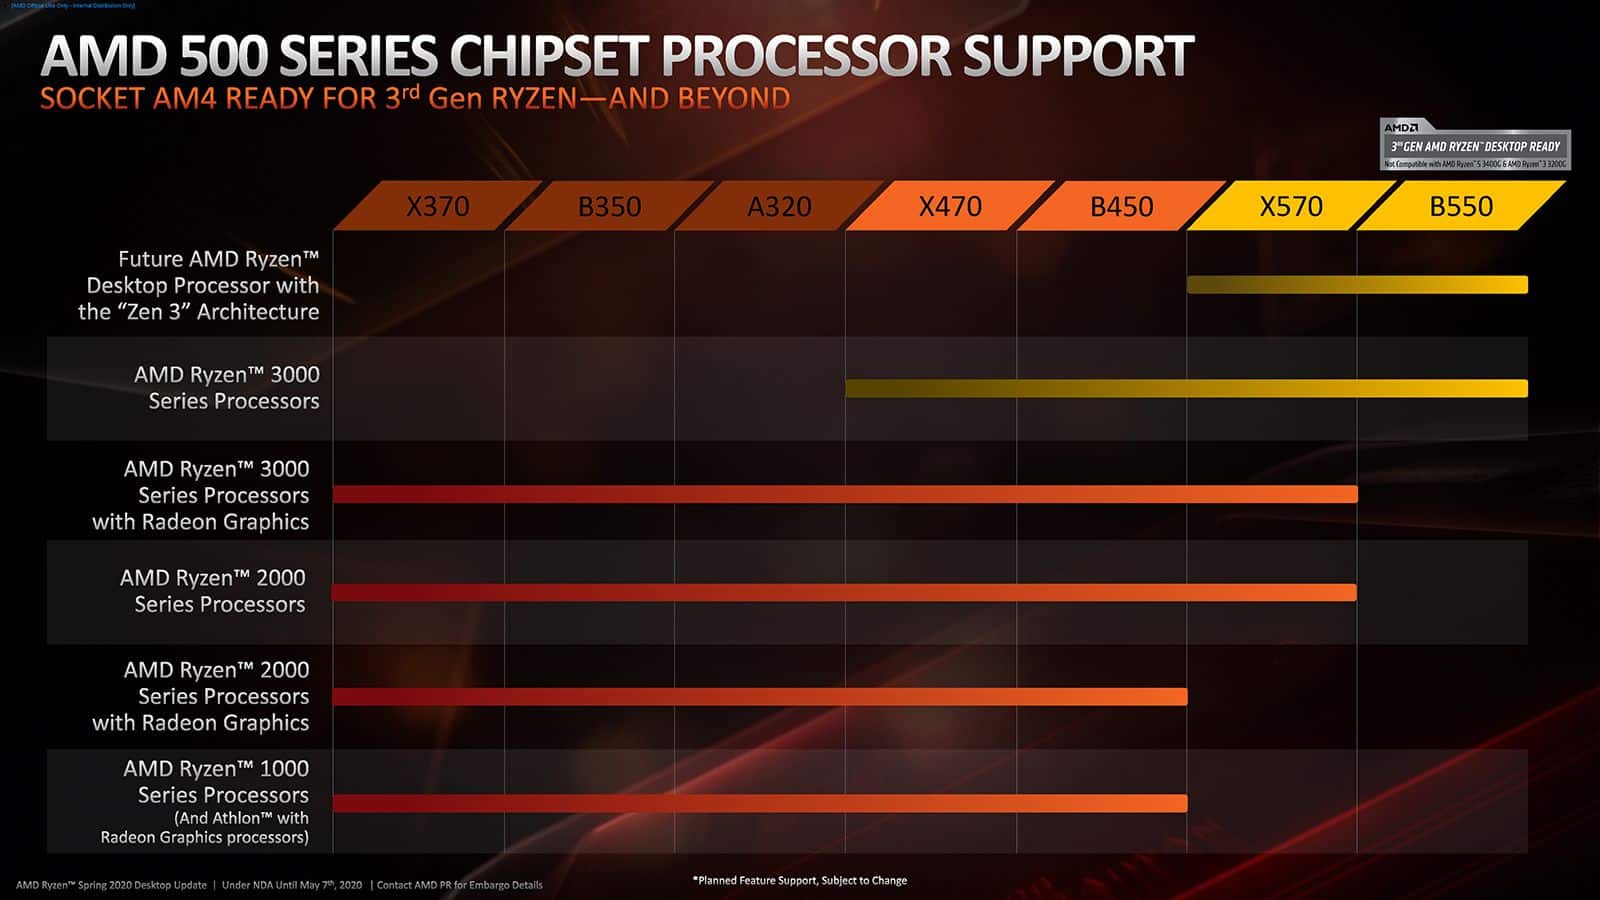 AMD confirma la compatibilidad de procesadores Zen 3 en las placas base con chipset B550 y X570